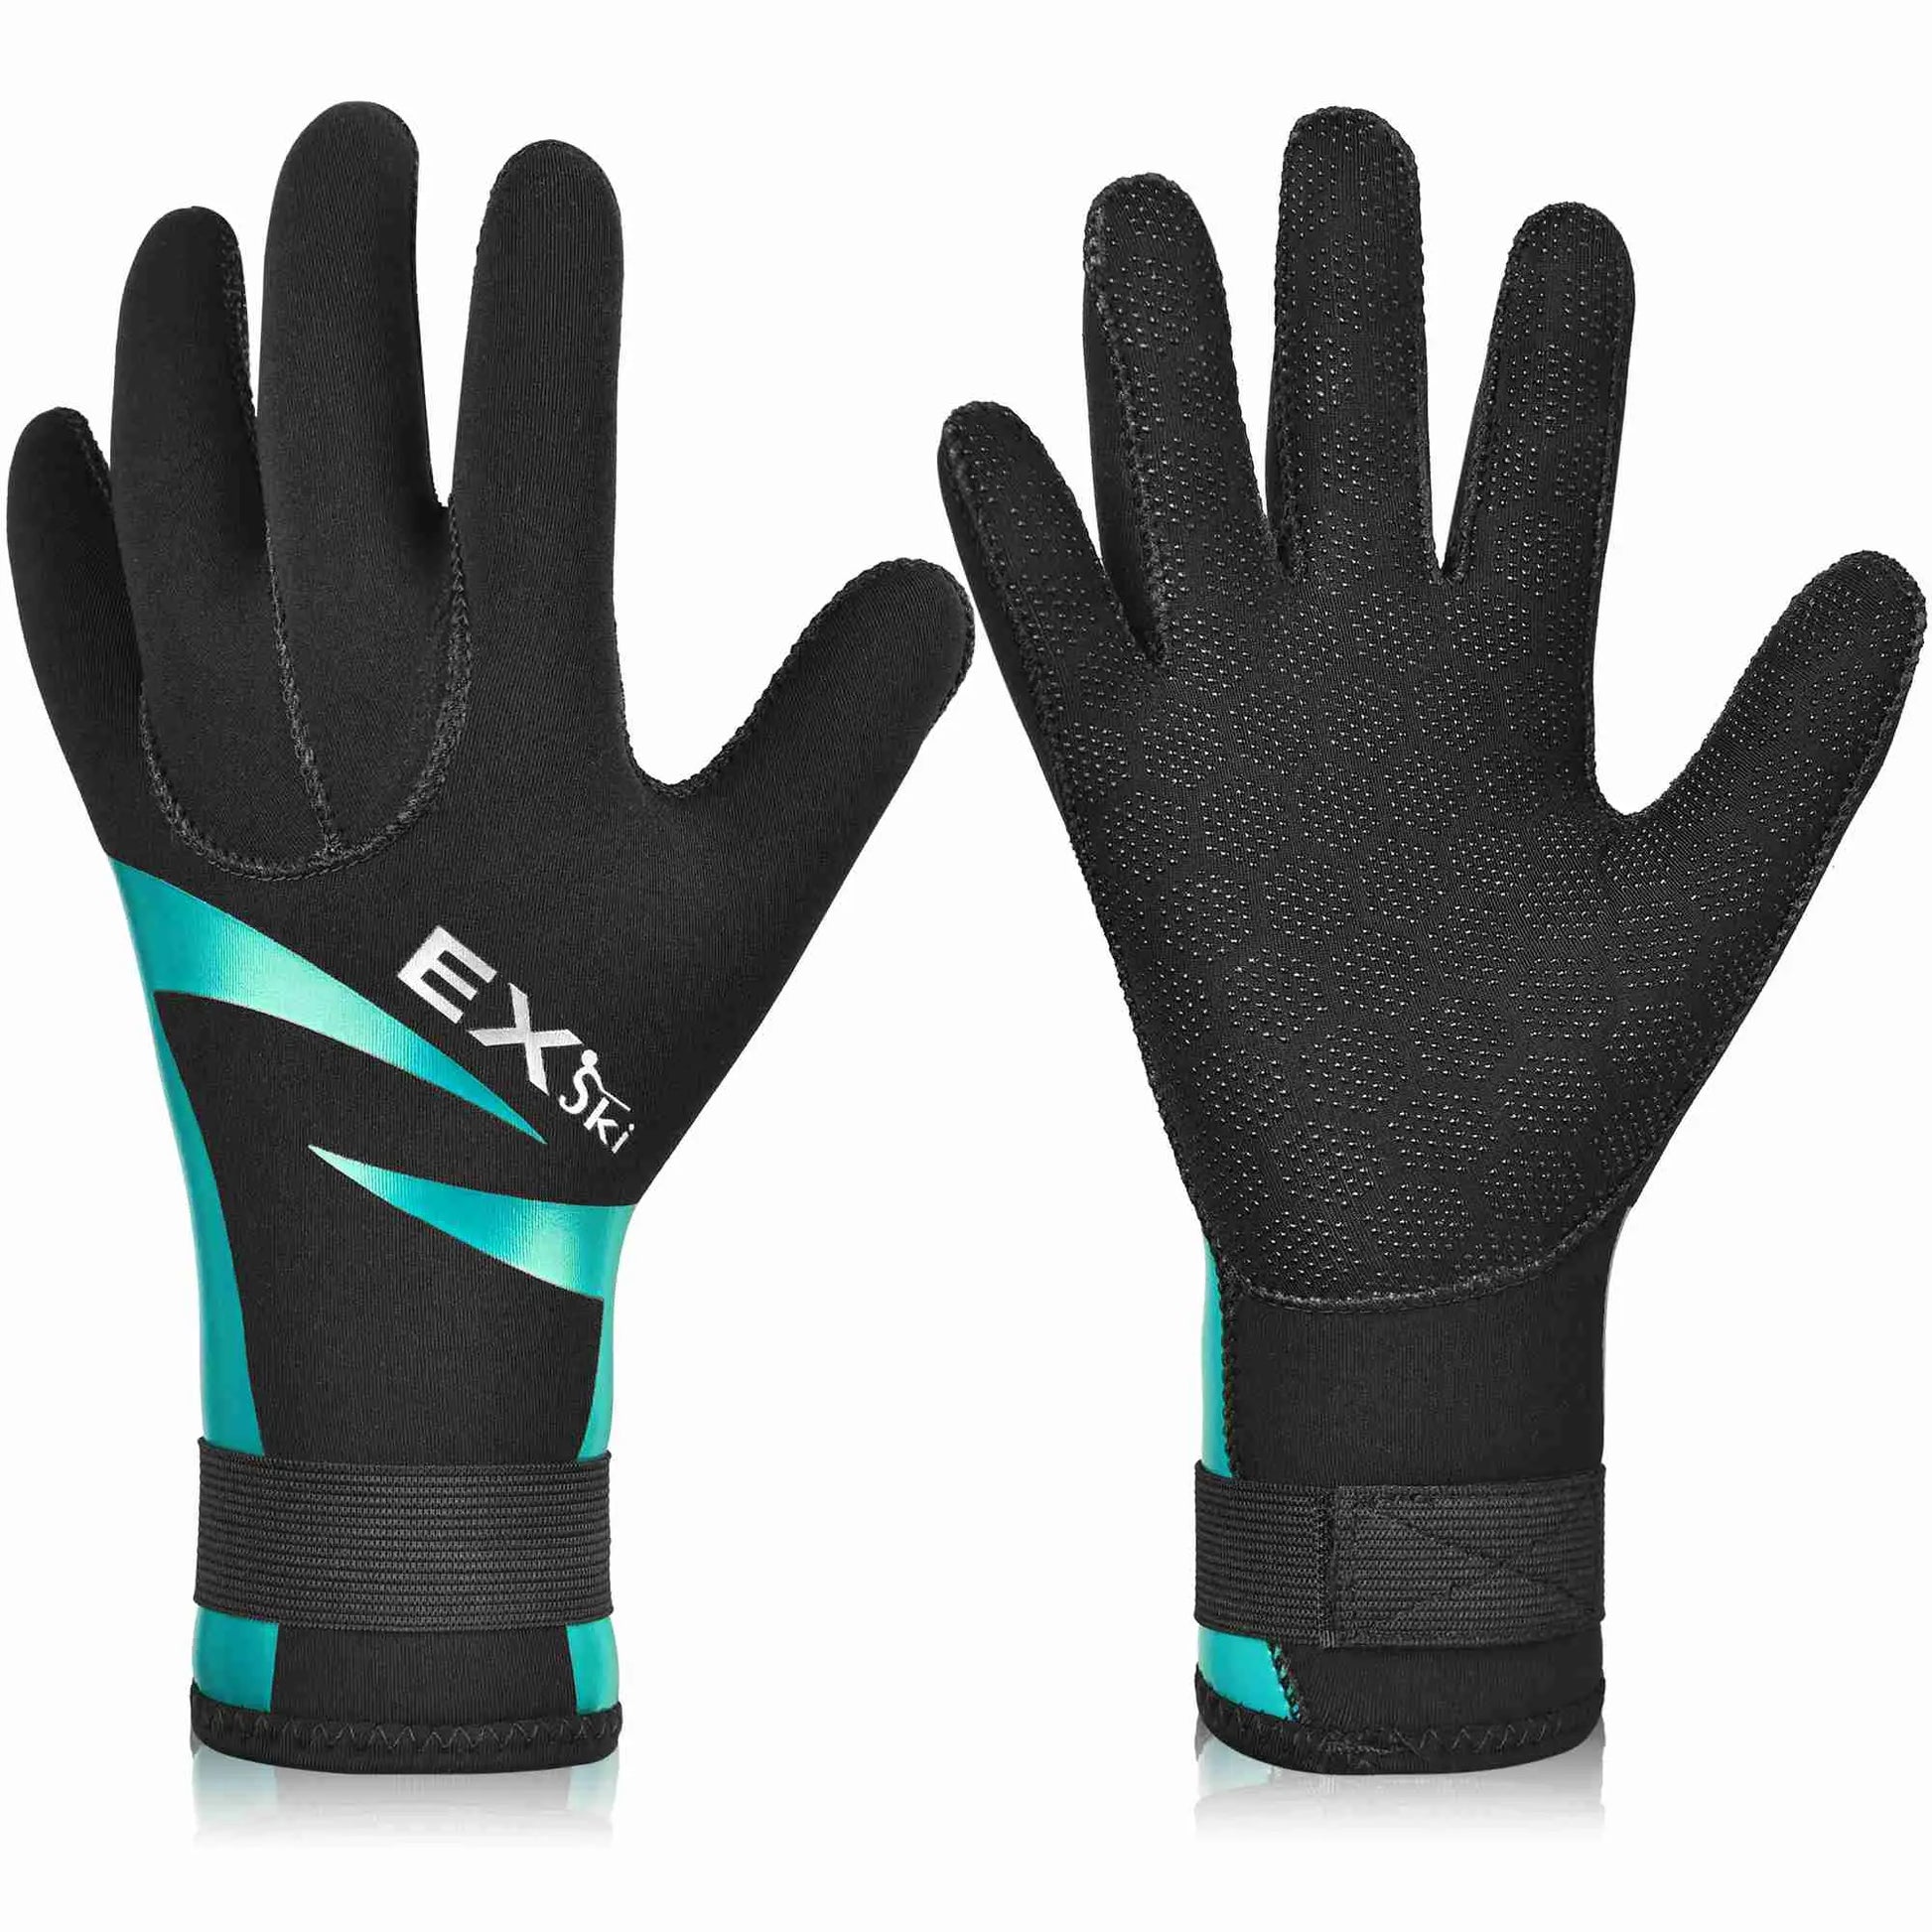 EXski Diving Gloves, 3mm Neoprene Wetsuit Gloves for Scuba Diving – EXSKI